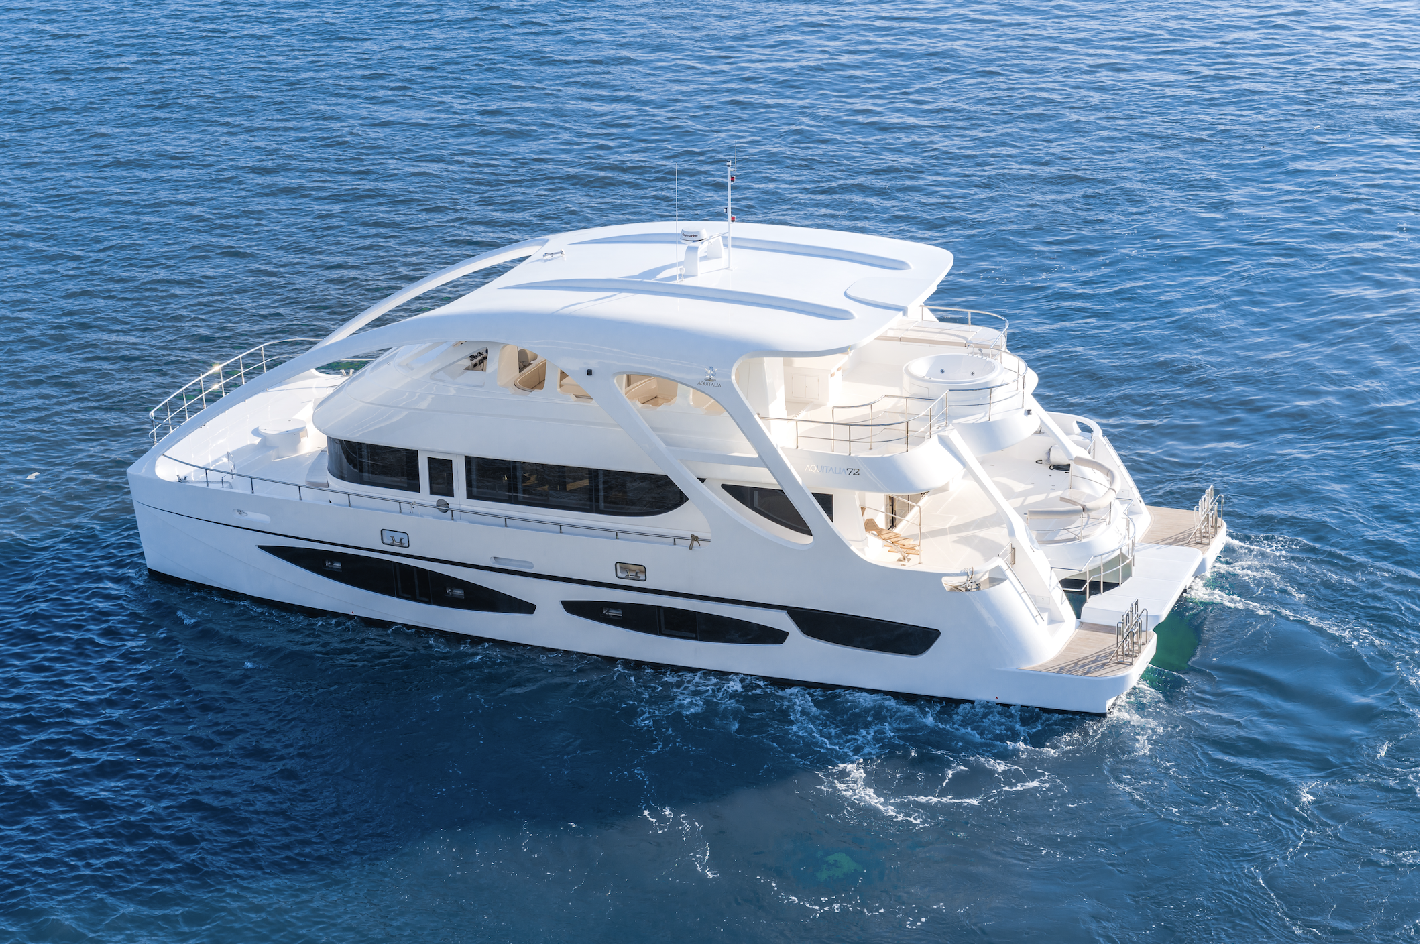 Aquitalia 72ft Luxury Motor Catamaran Boat 2